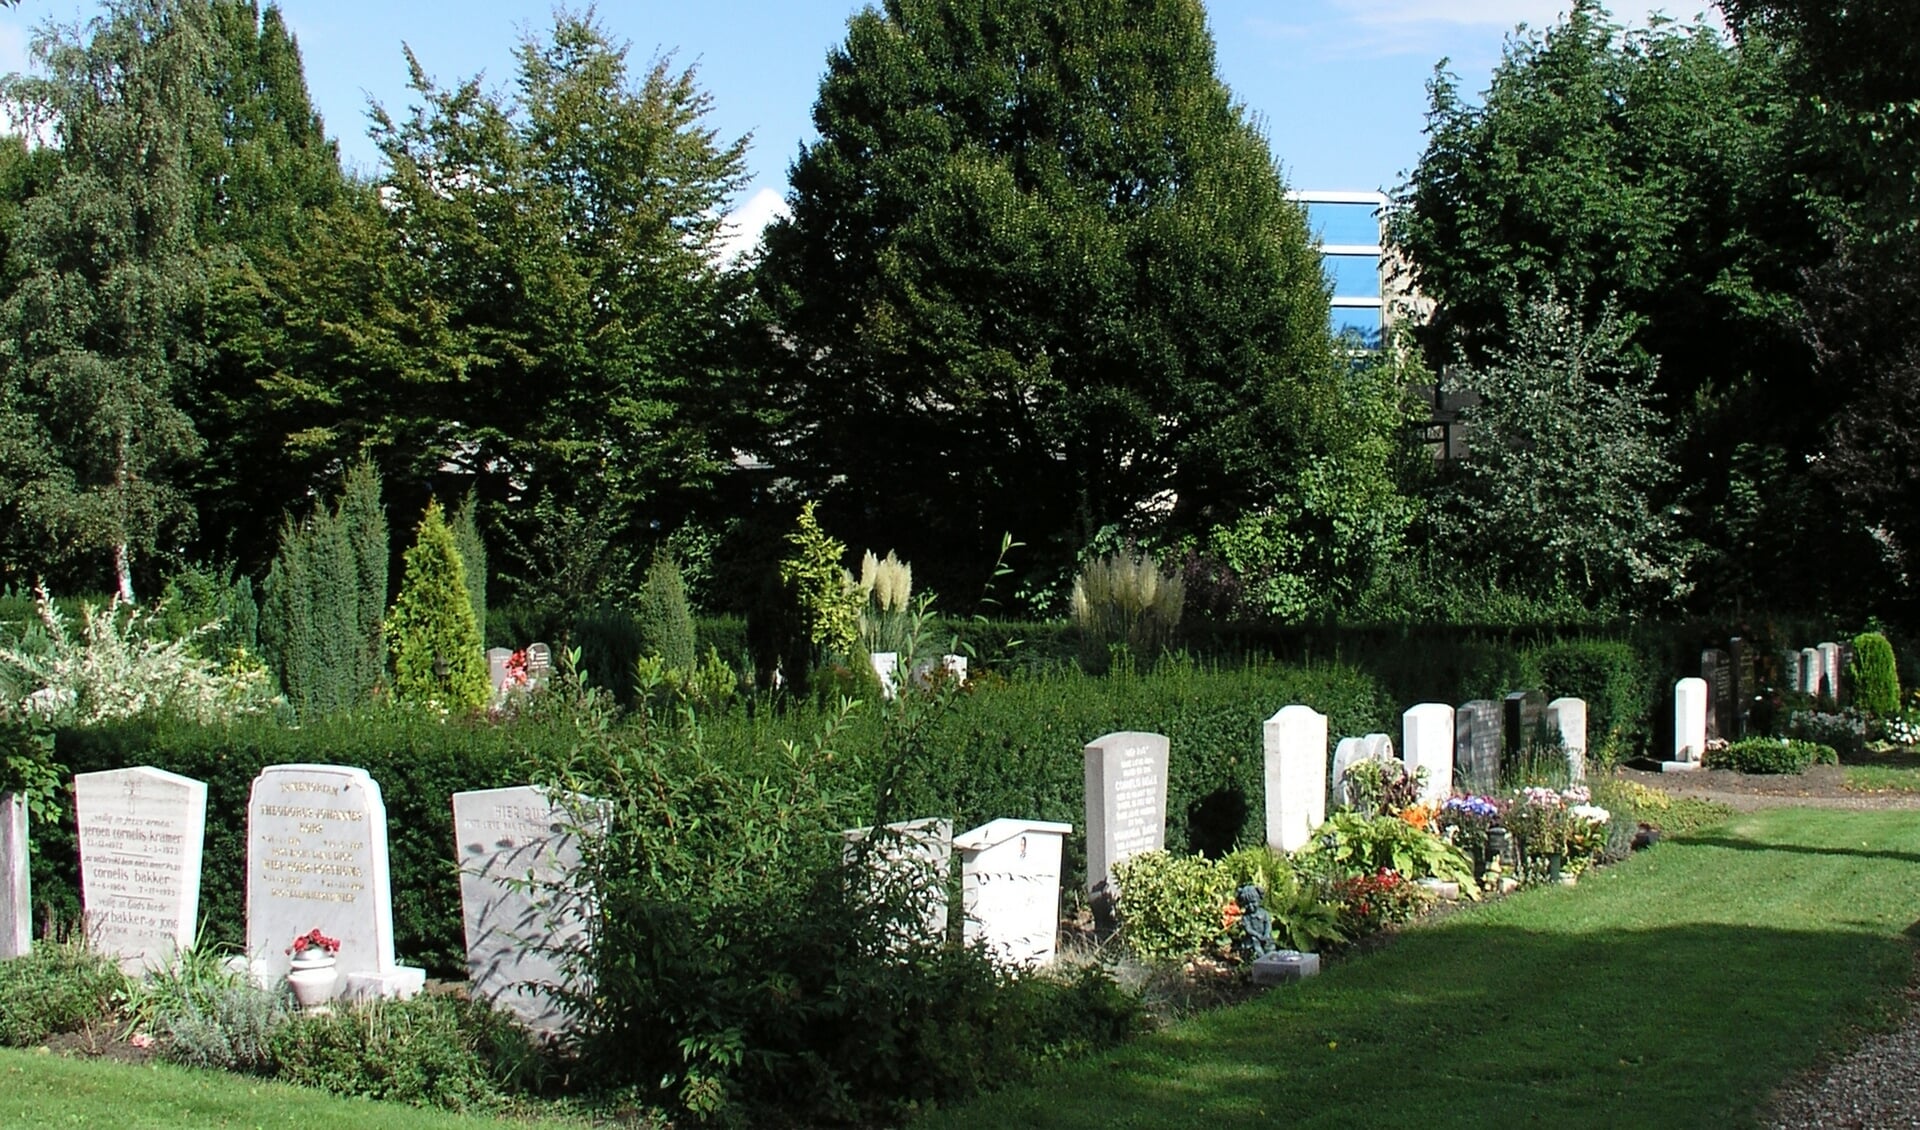 Ook de bomen op de algemene begraafplaats in Zaandam Zuid mogen niet zonder vergunning gerooid worden.